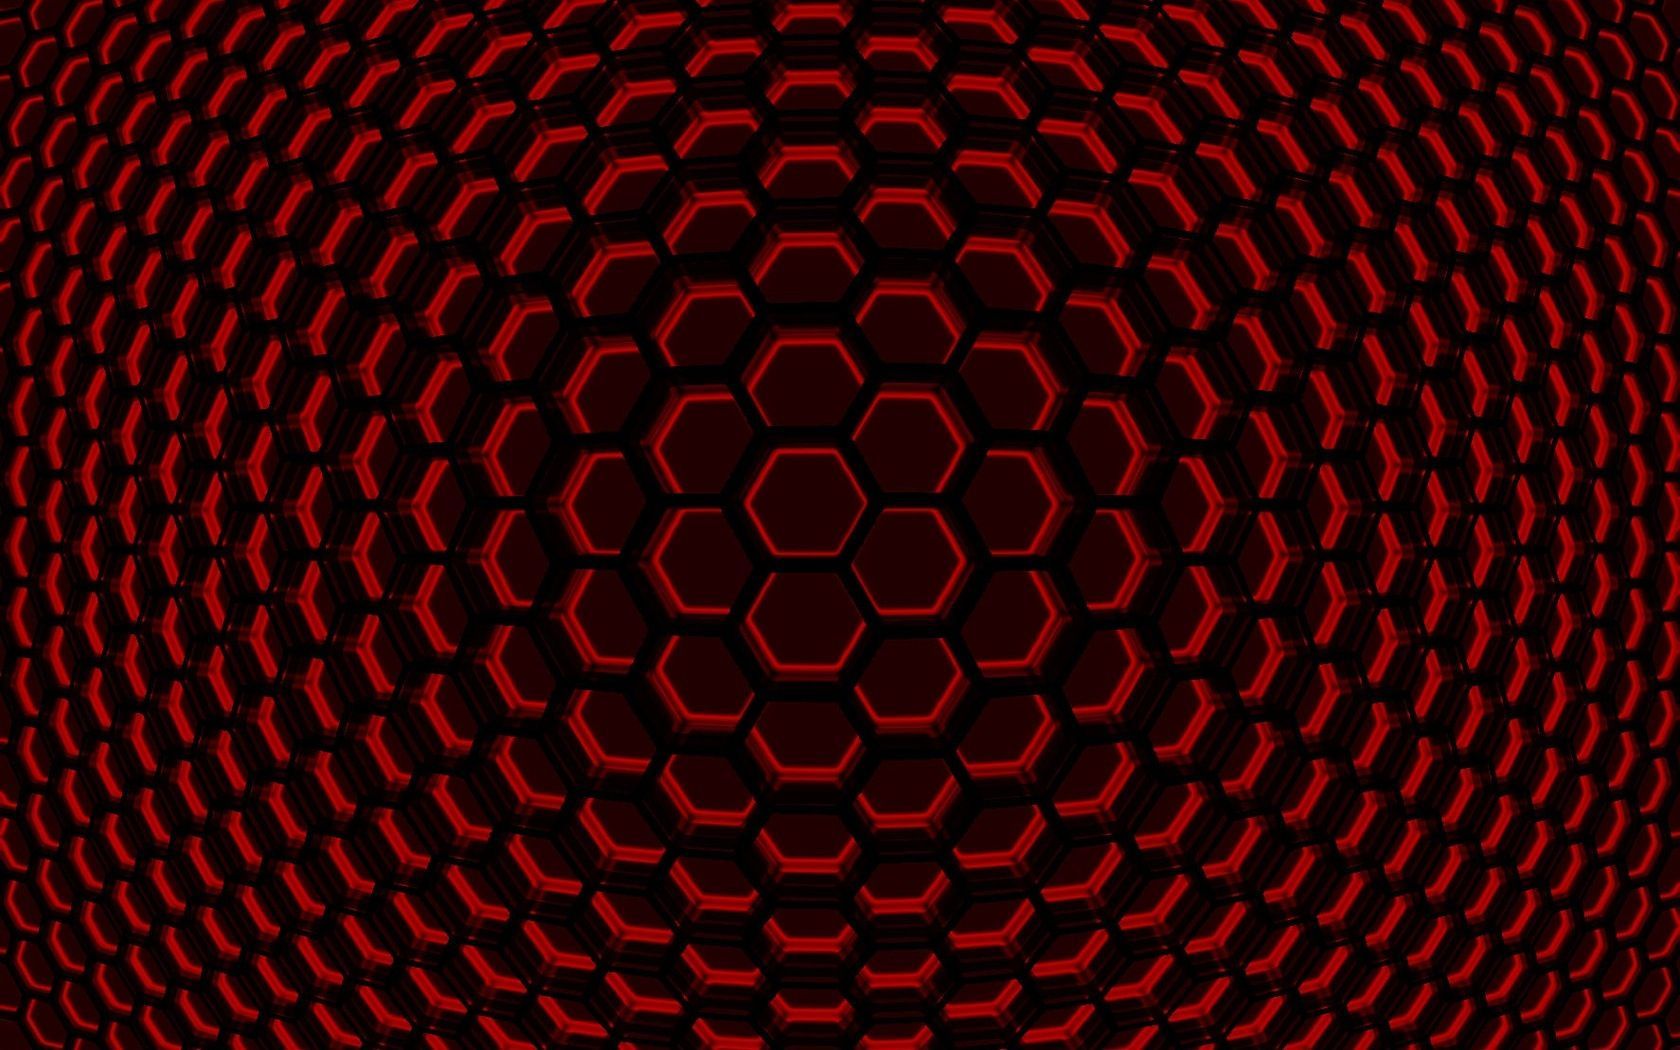 Hexagon texture wallpaper | Wallpaper Wide HD